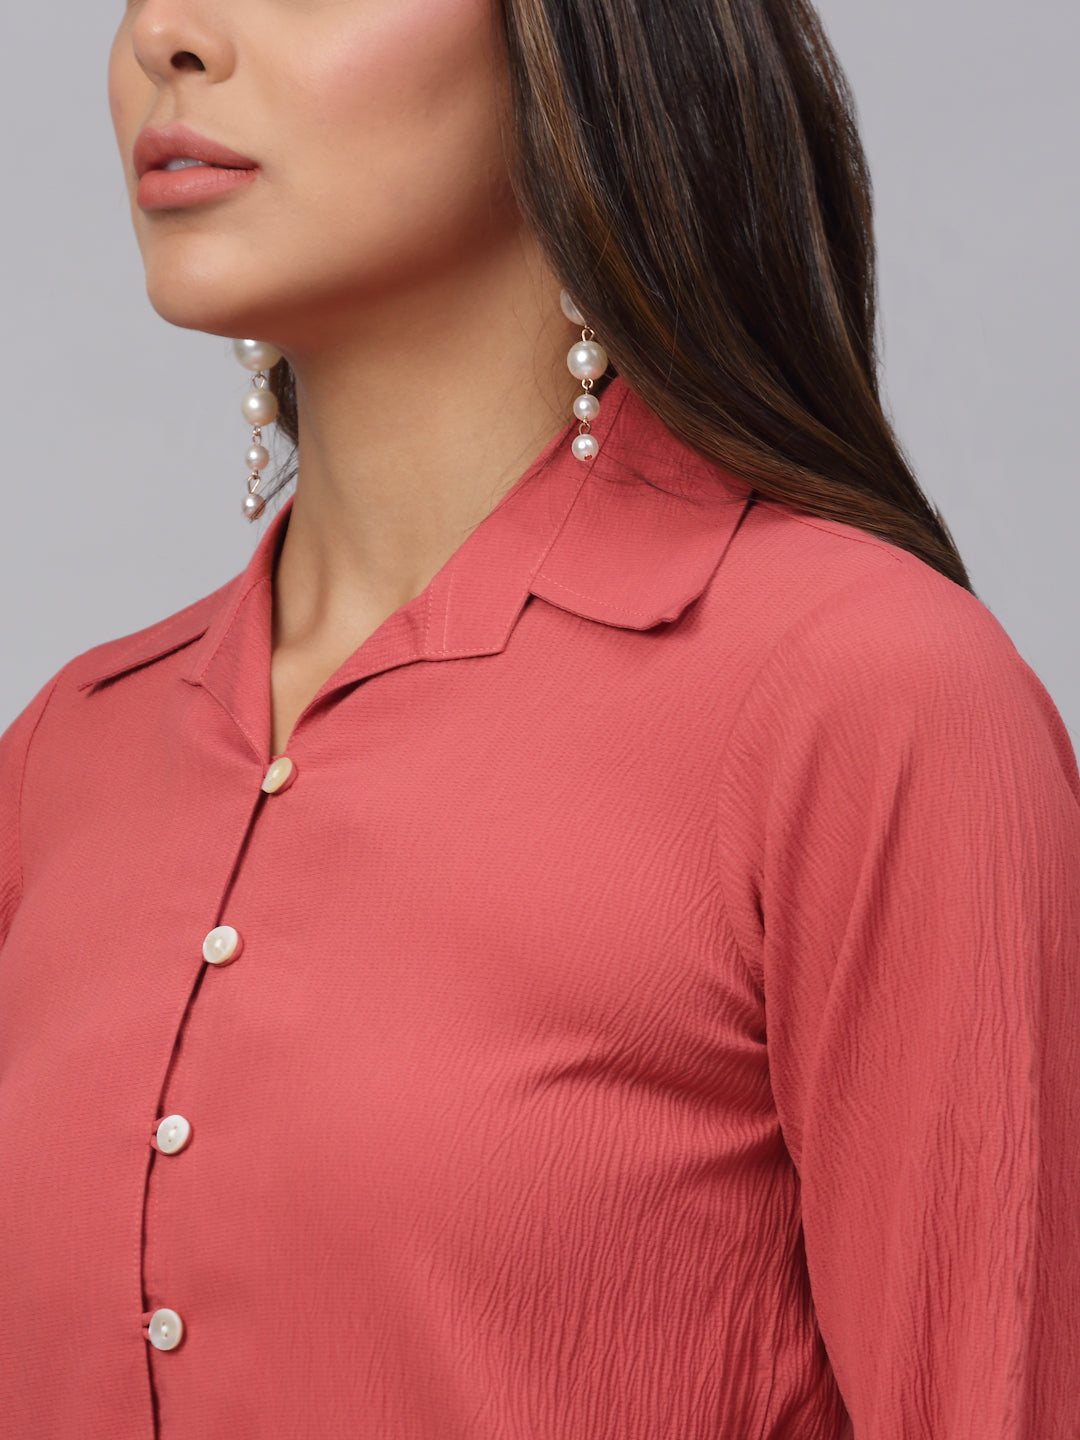 Jainish Women's Peach Solid Shirt - Peach - Distacart